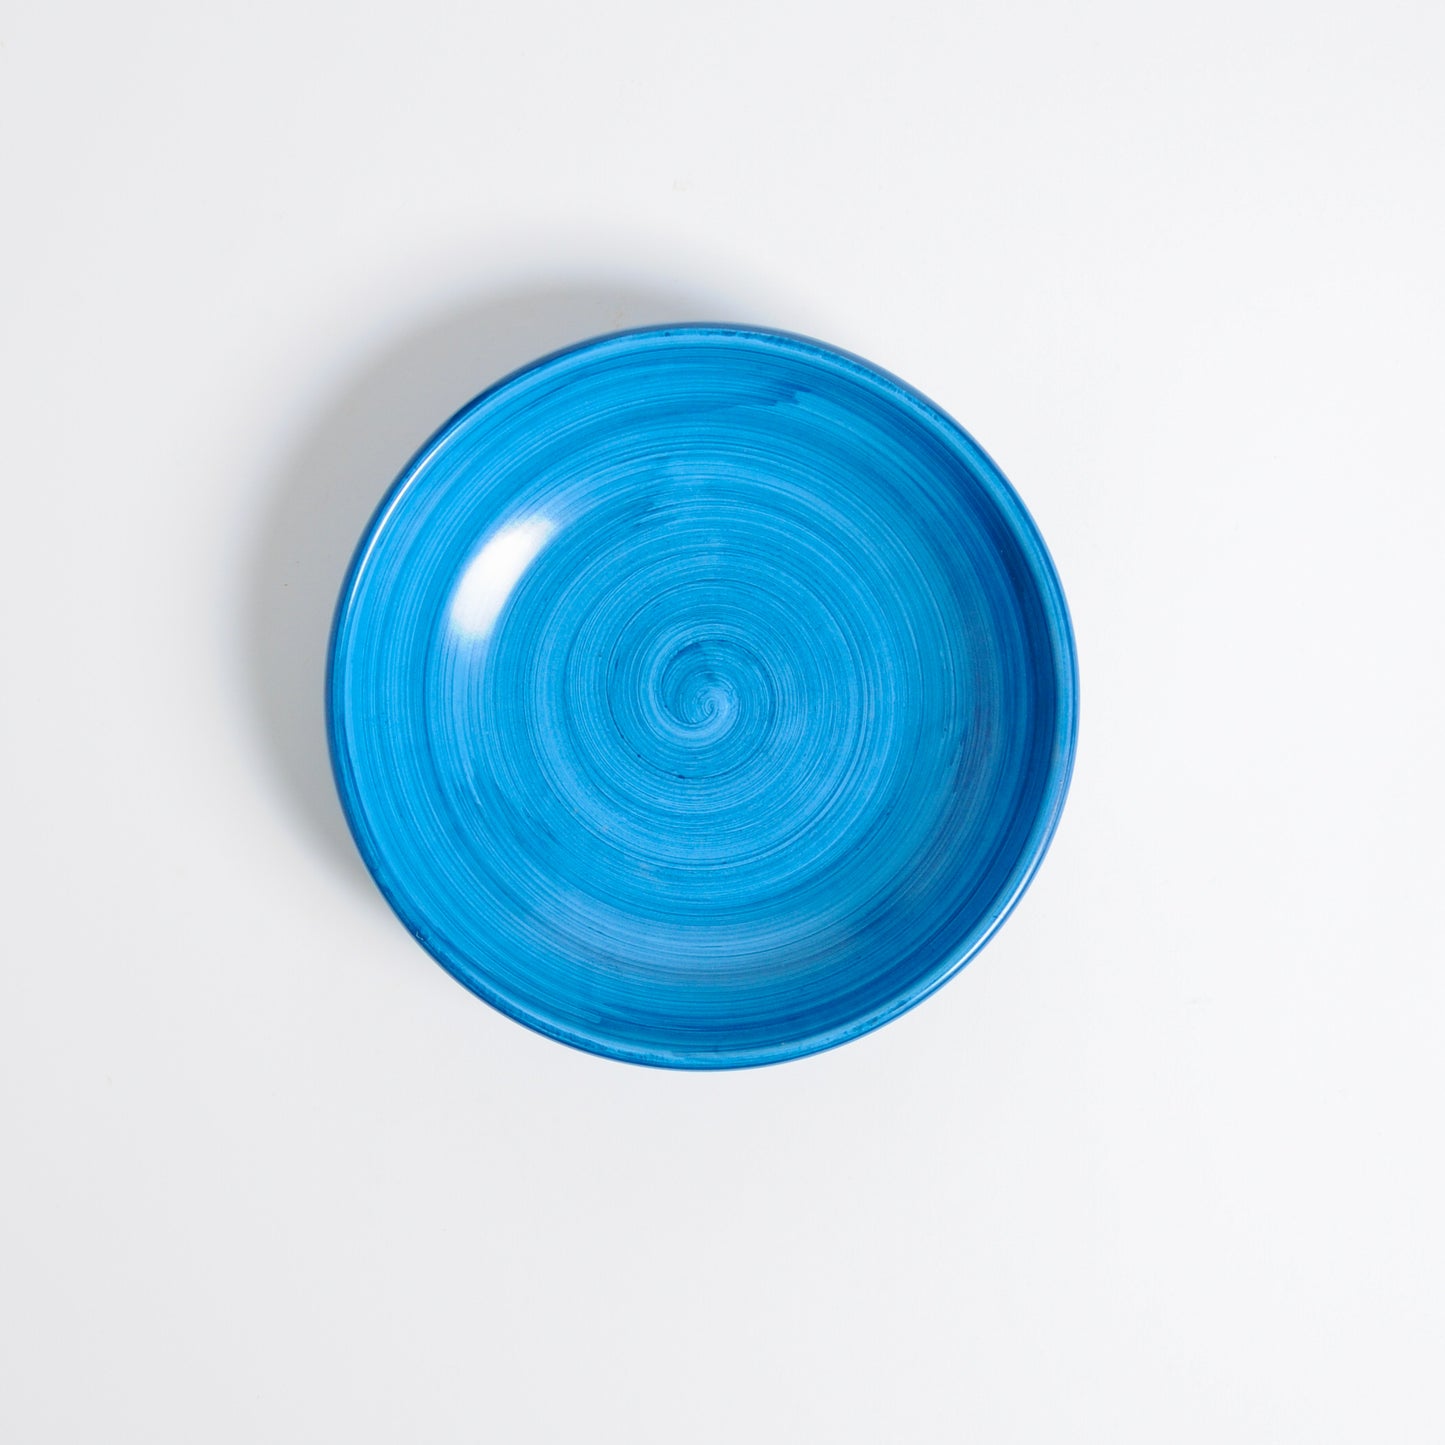 Light blue brushed flat dish